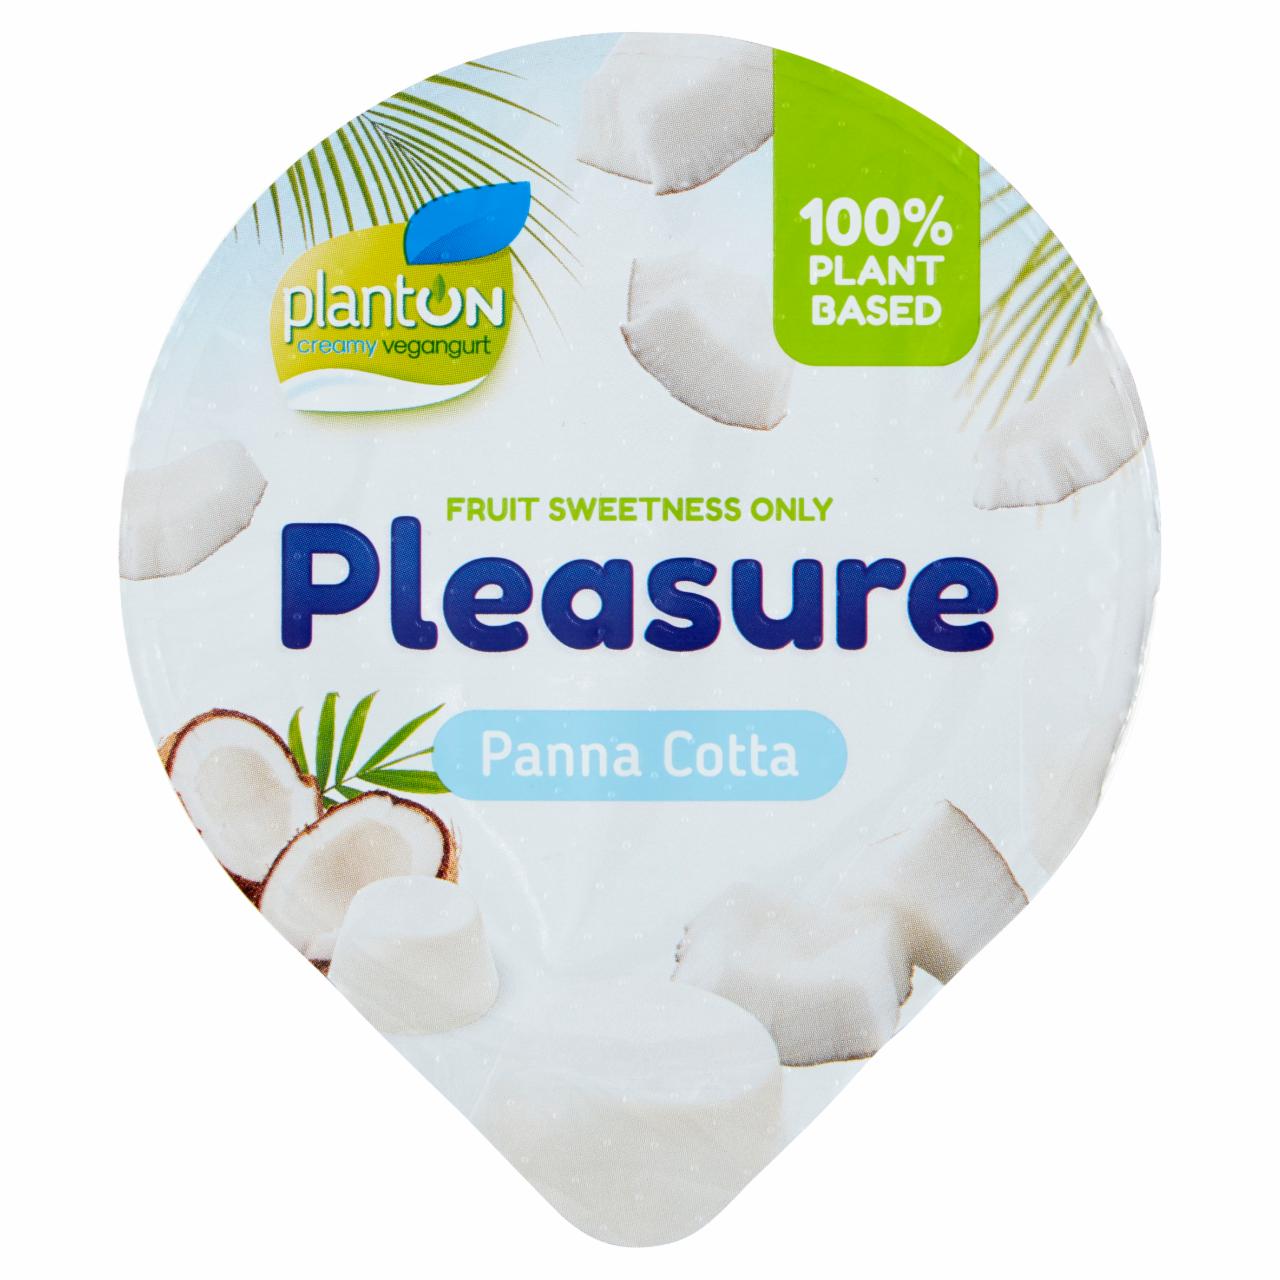 Zdjęcia - Planton Pleasure Kremowy kokosowy vegangurt panna cotta 130 g